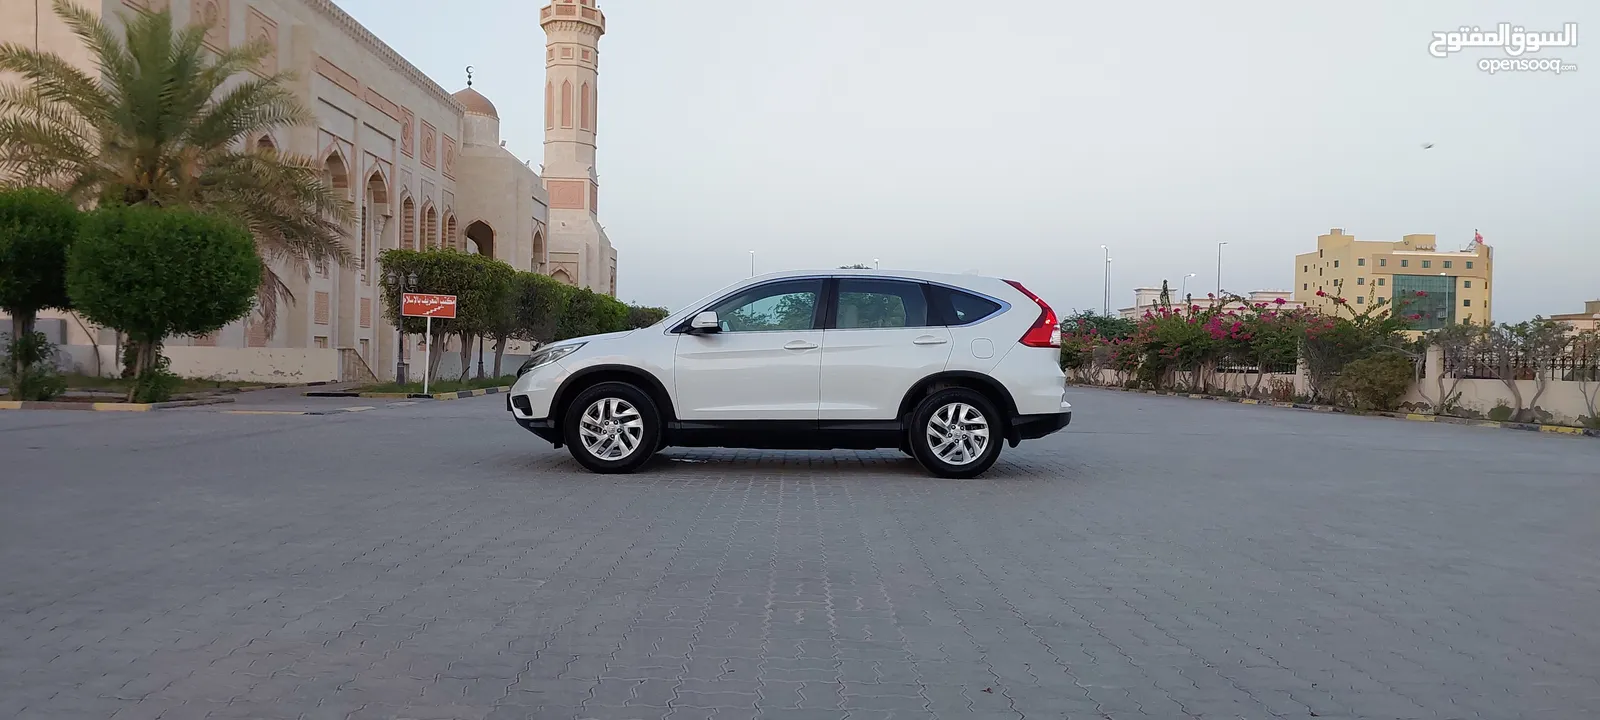 فرصه هوندا CRV خليجية عمان  المالك الاول بدون حوادث بسعر مغري